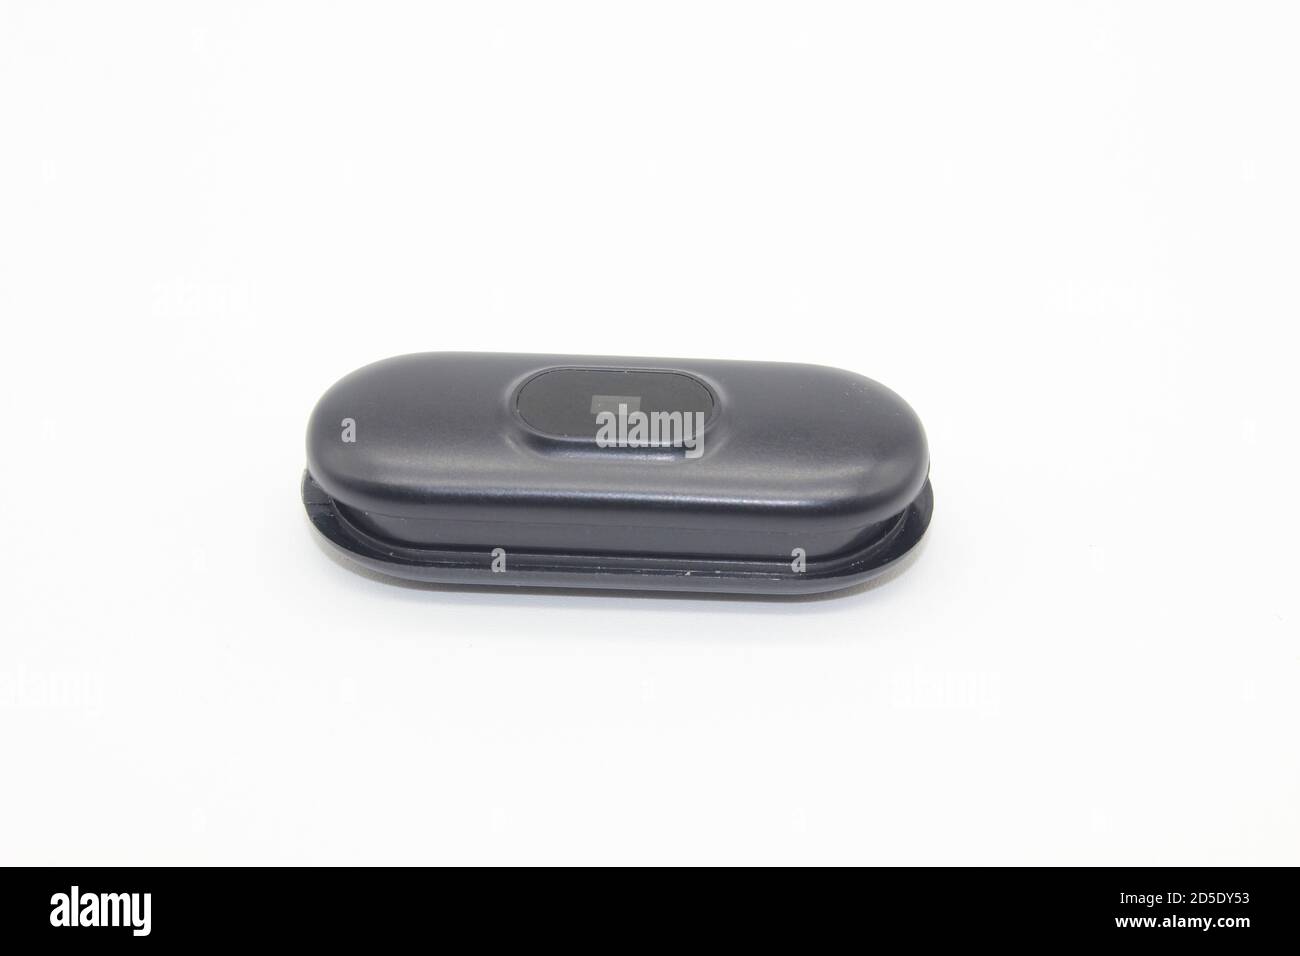 Un'immagine della mini videocamera wifi per la sicurezza domestica sfondo bianco Foto Stock